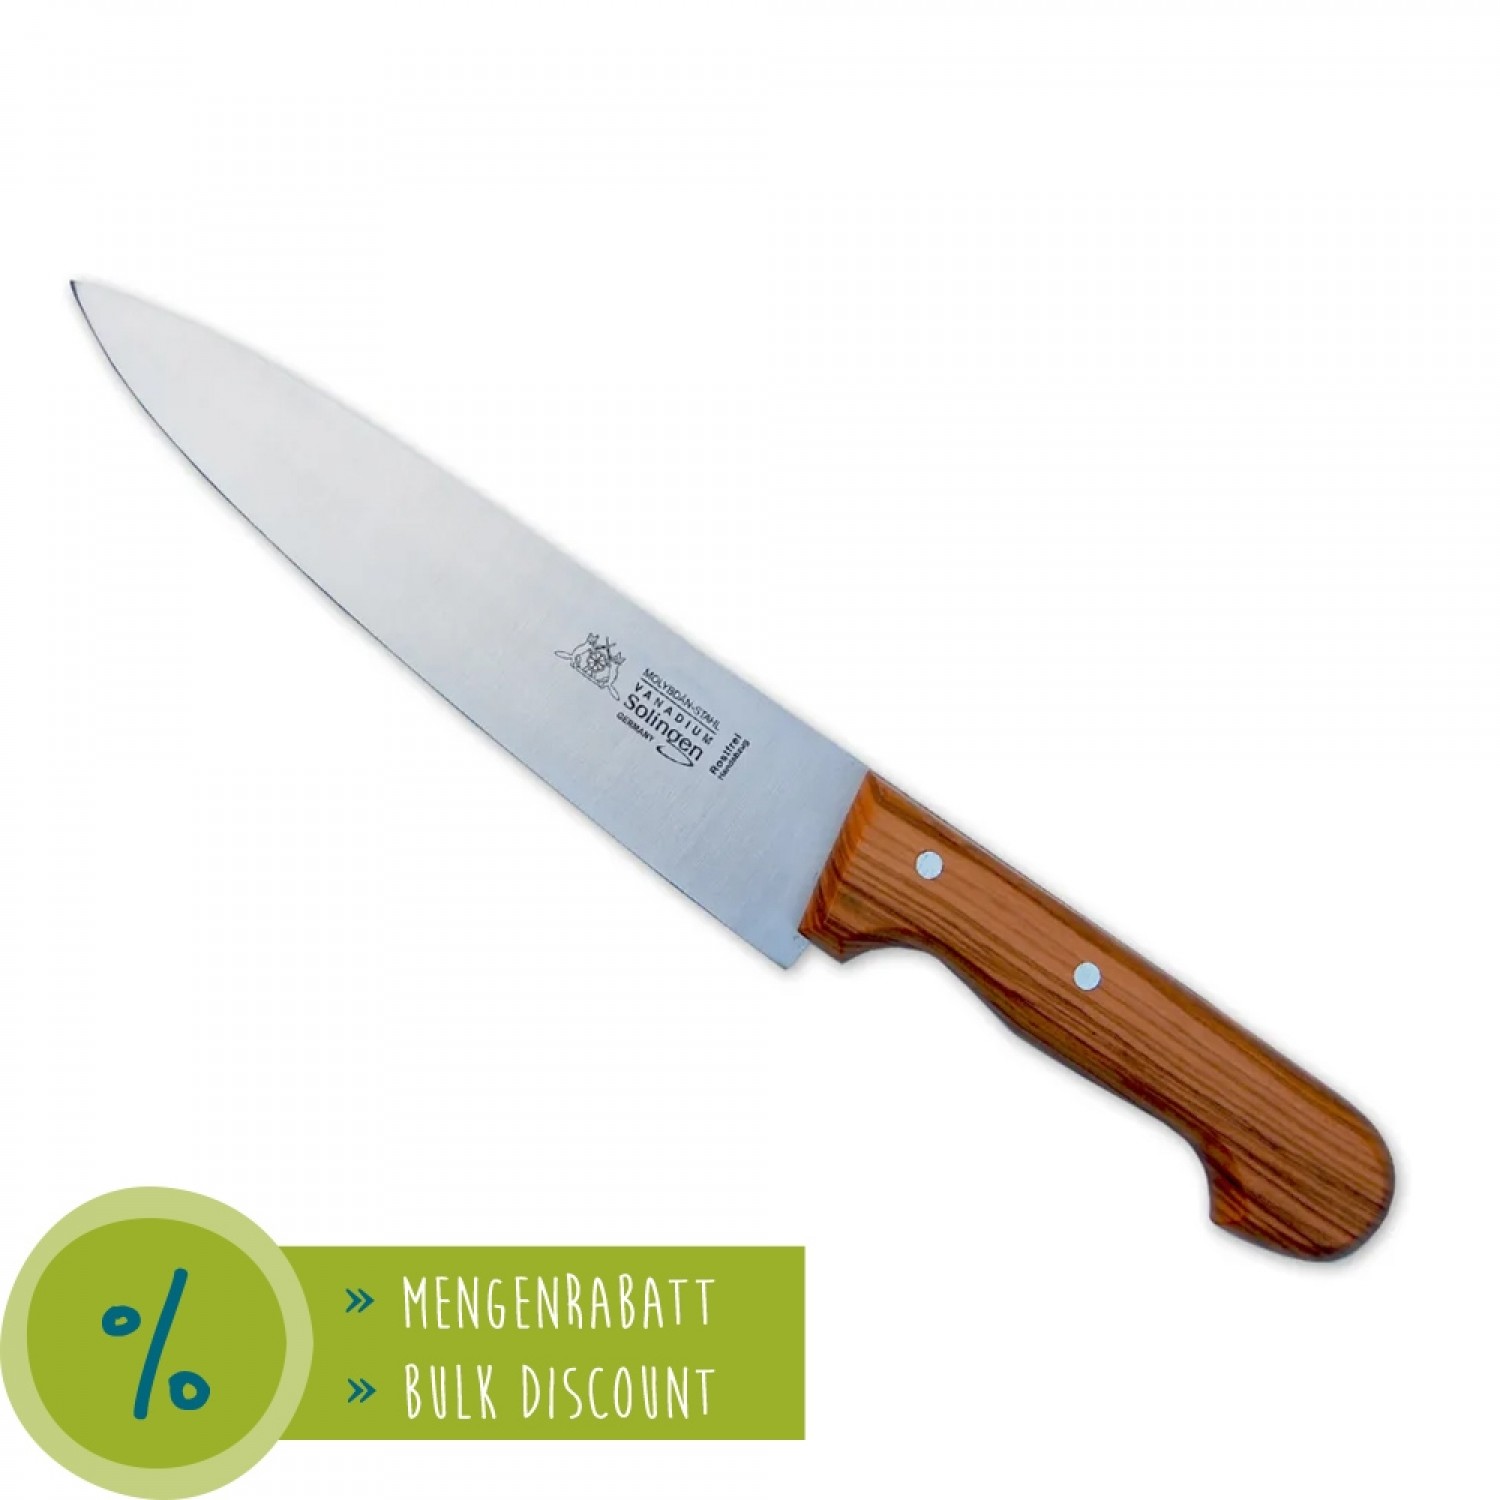 Öko Küchenmesser mit Olivenholz Griff & Schwertkrone Klinge » D.O.M. 